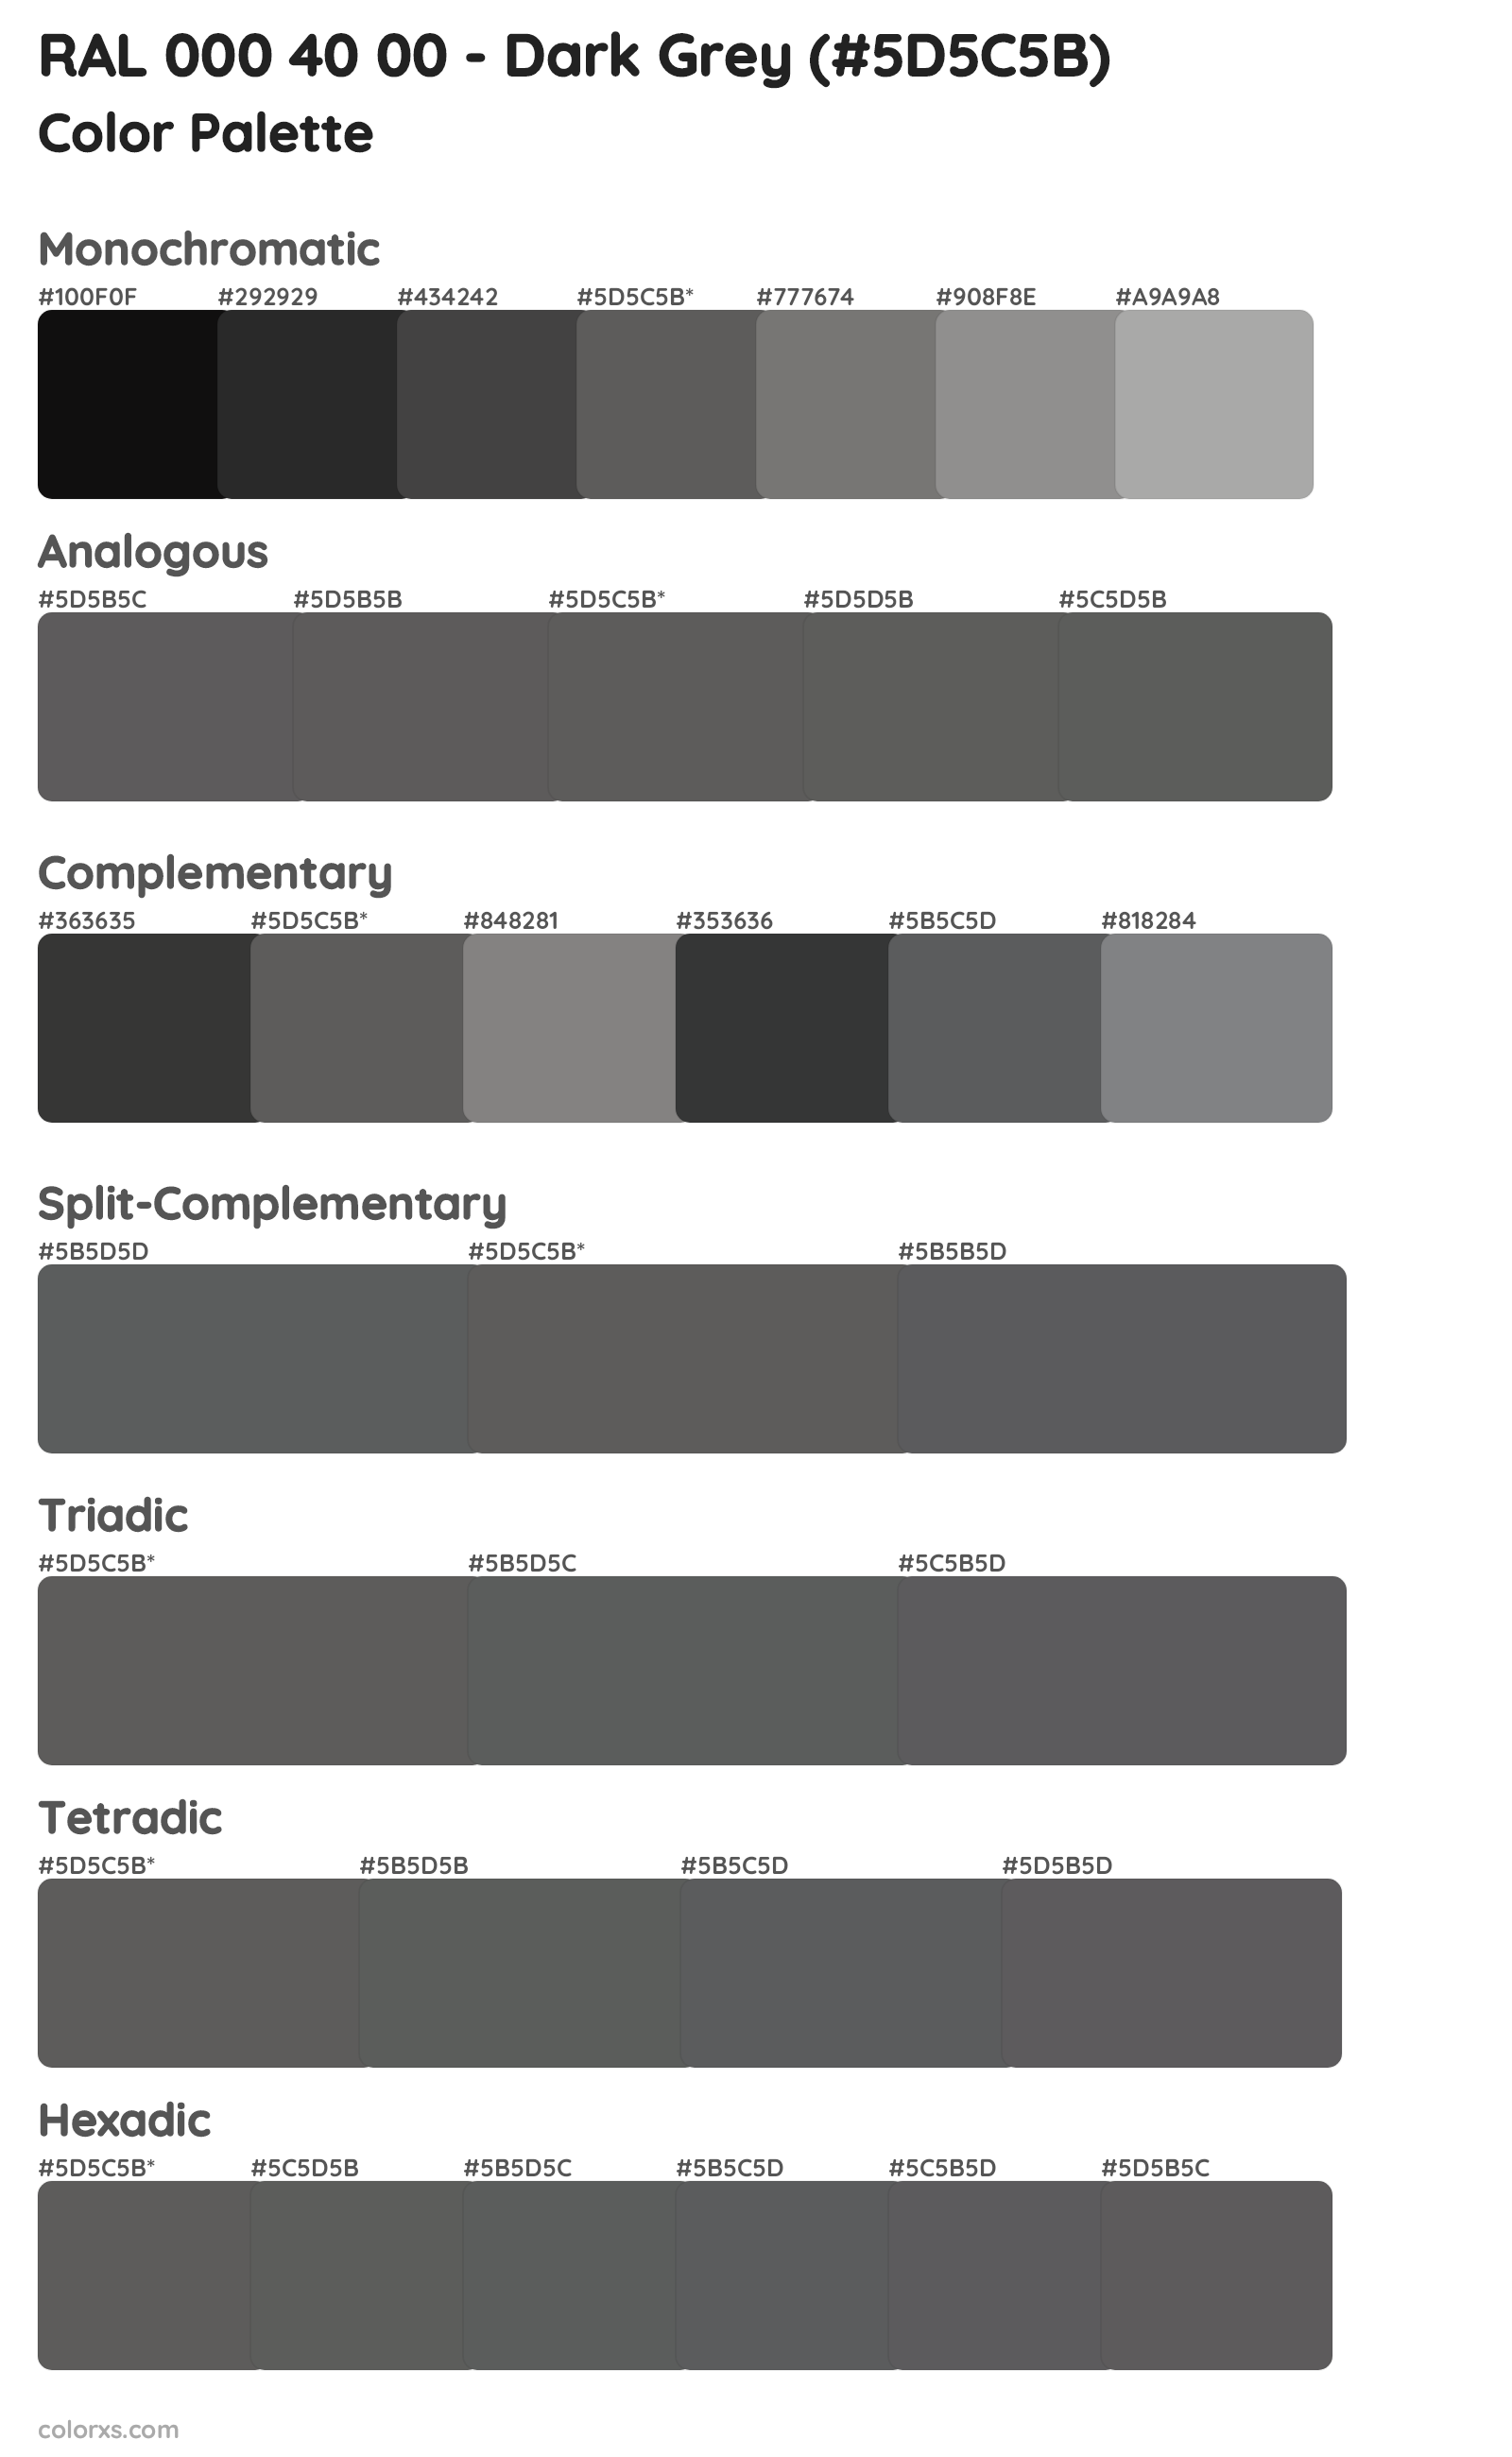 RAL 000 40 00 - Dark Grey Color Scheme Palettes